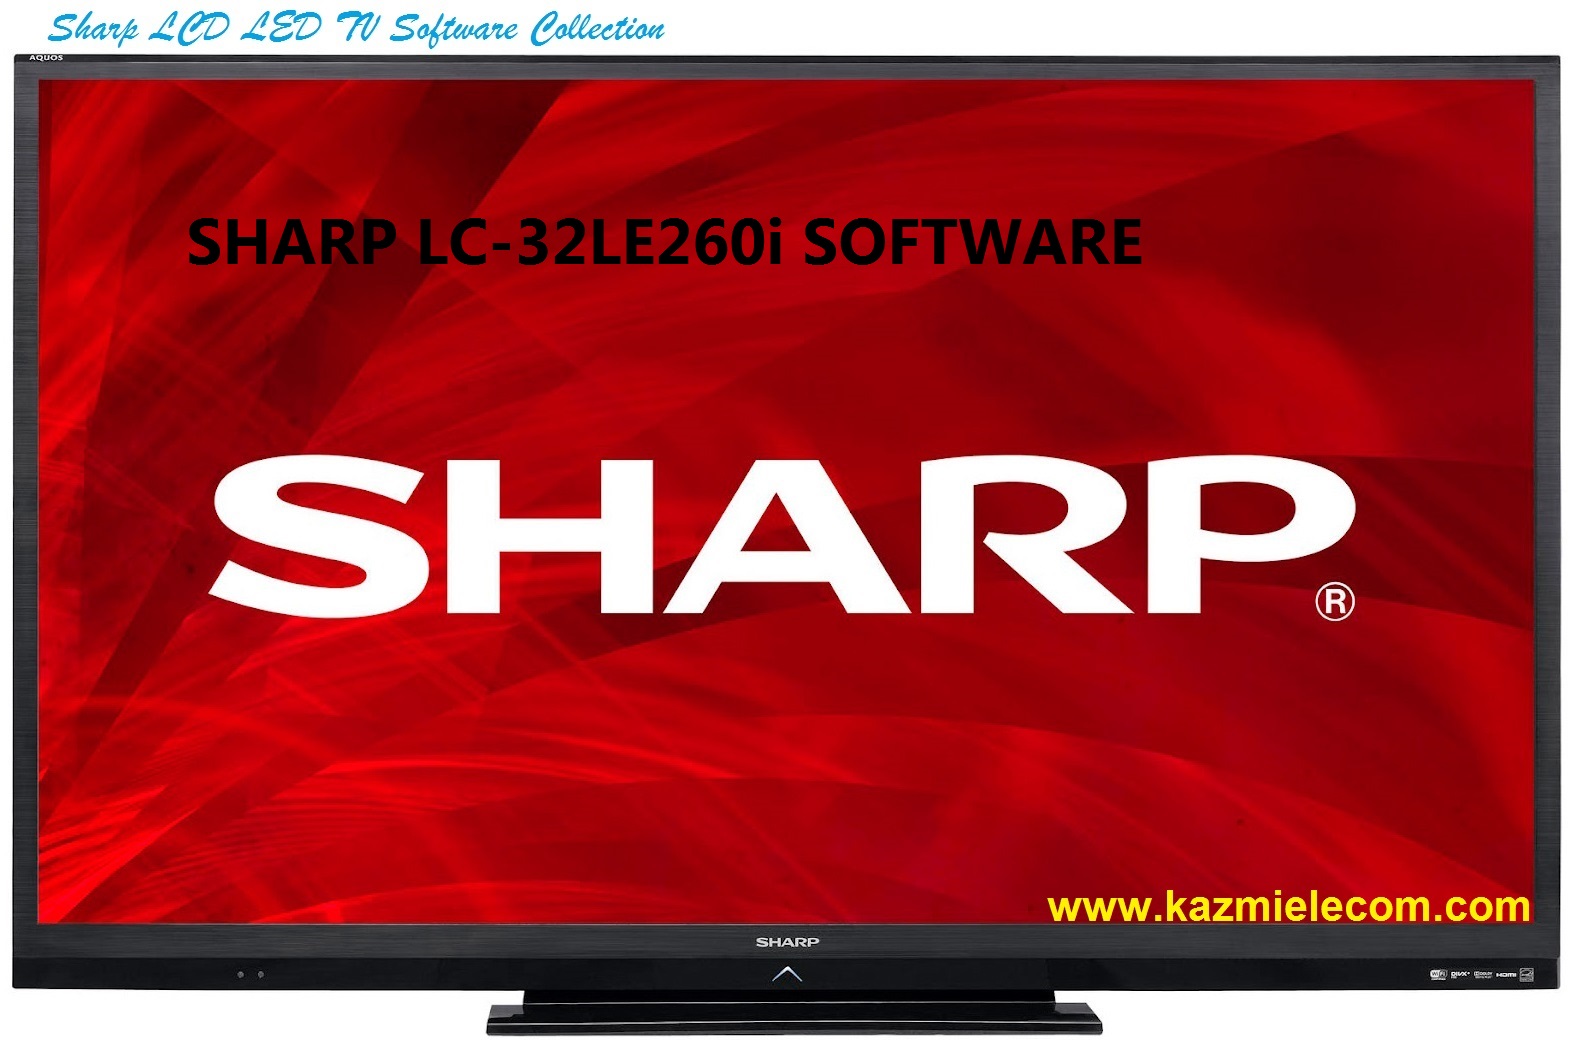 Sharp Lc-32Le260I